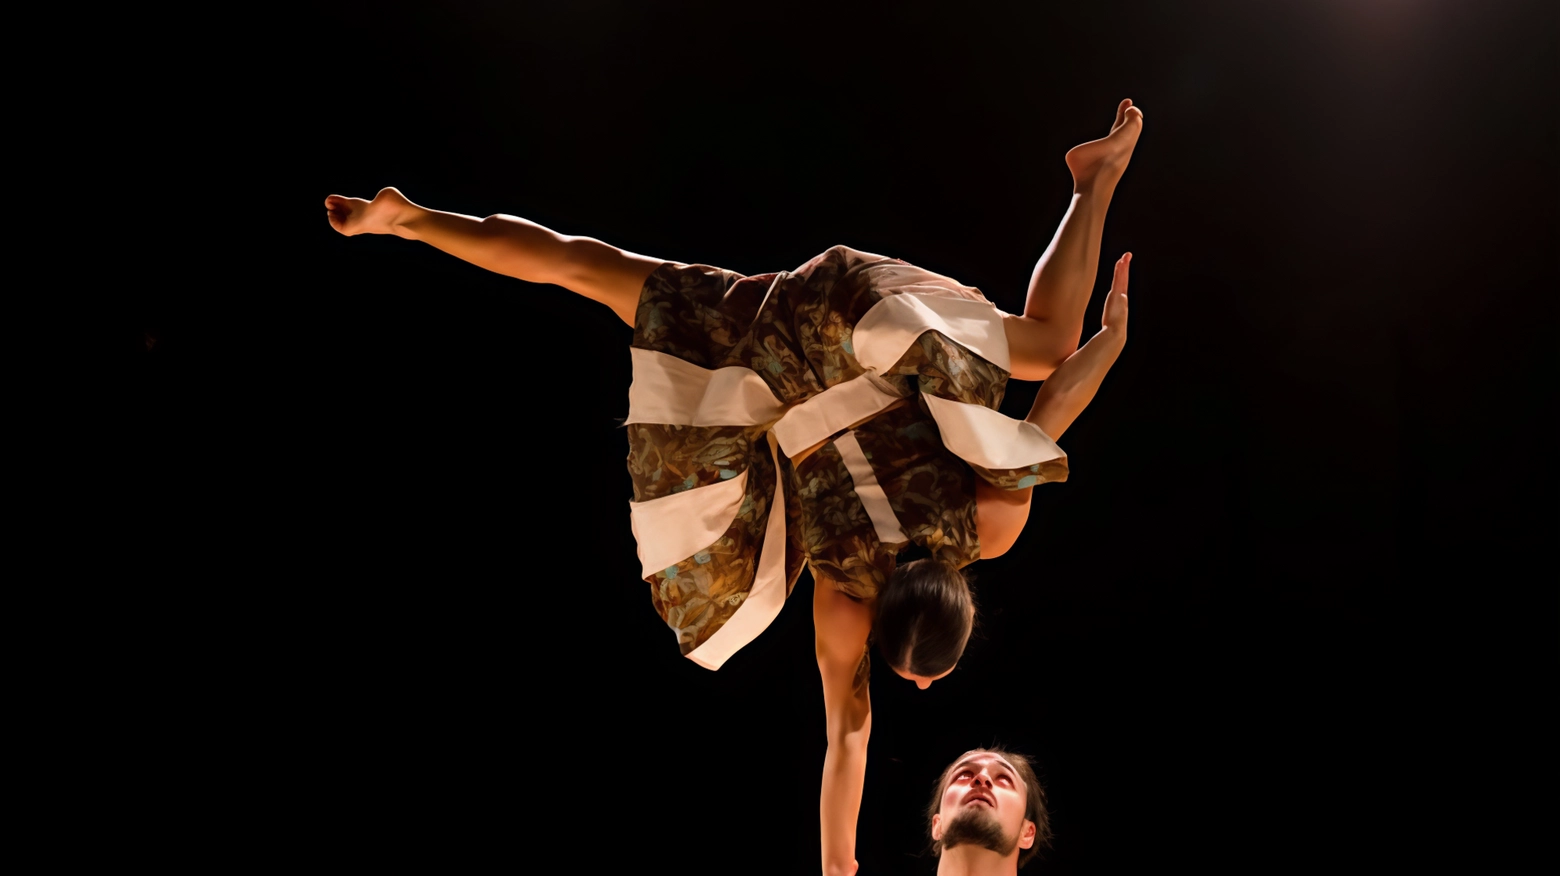 Circo acrobatico e danza moderna: ecco "Flora" assieme al Duo Kaos